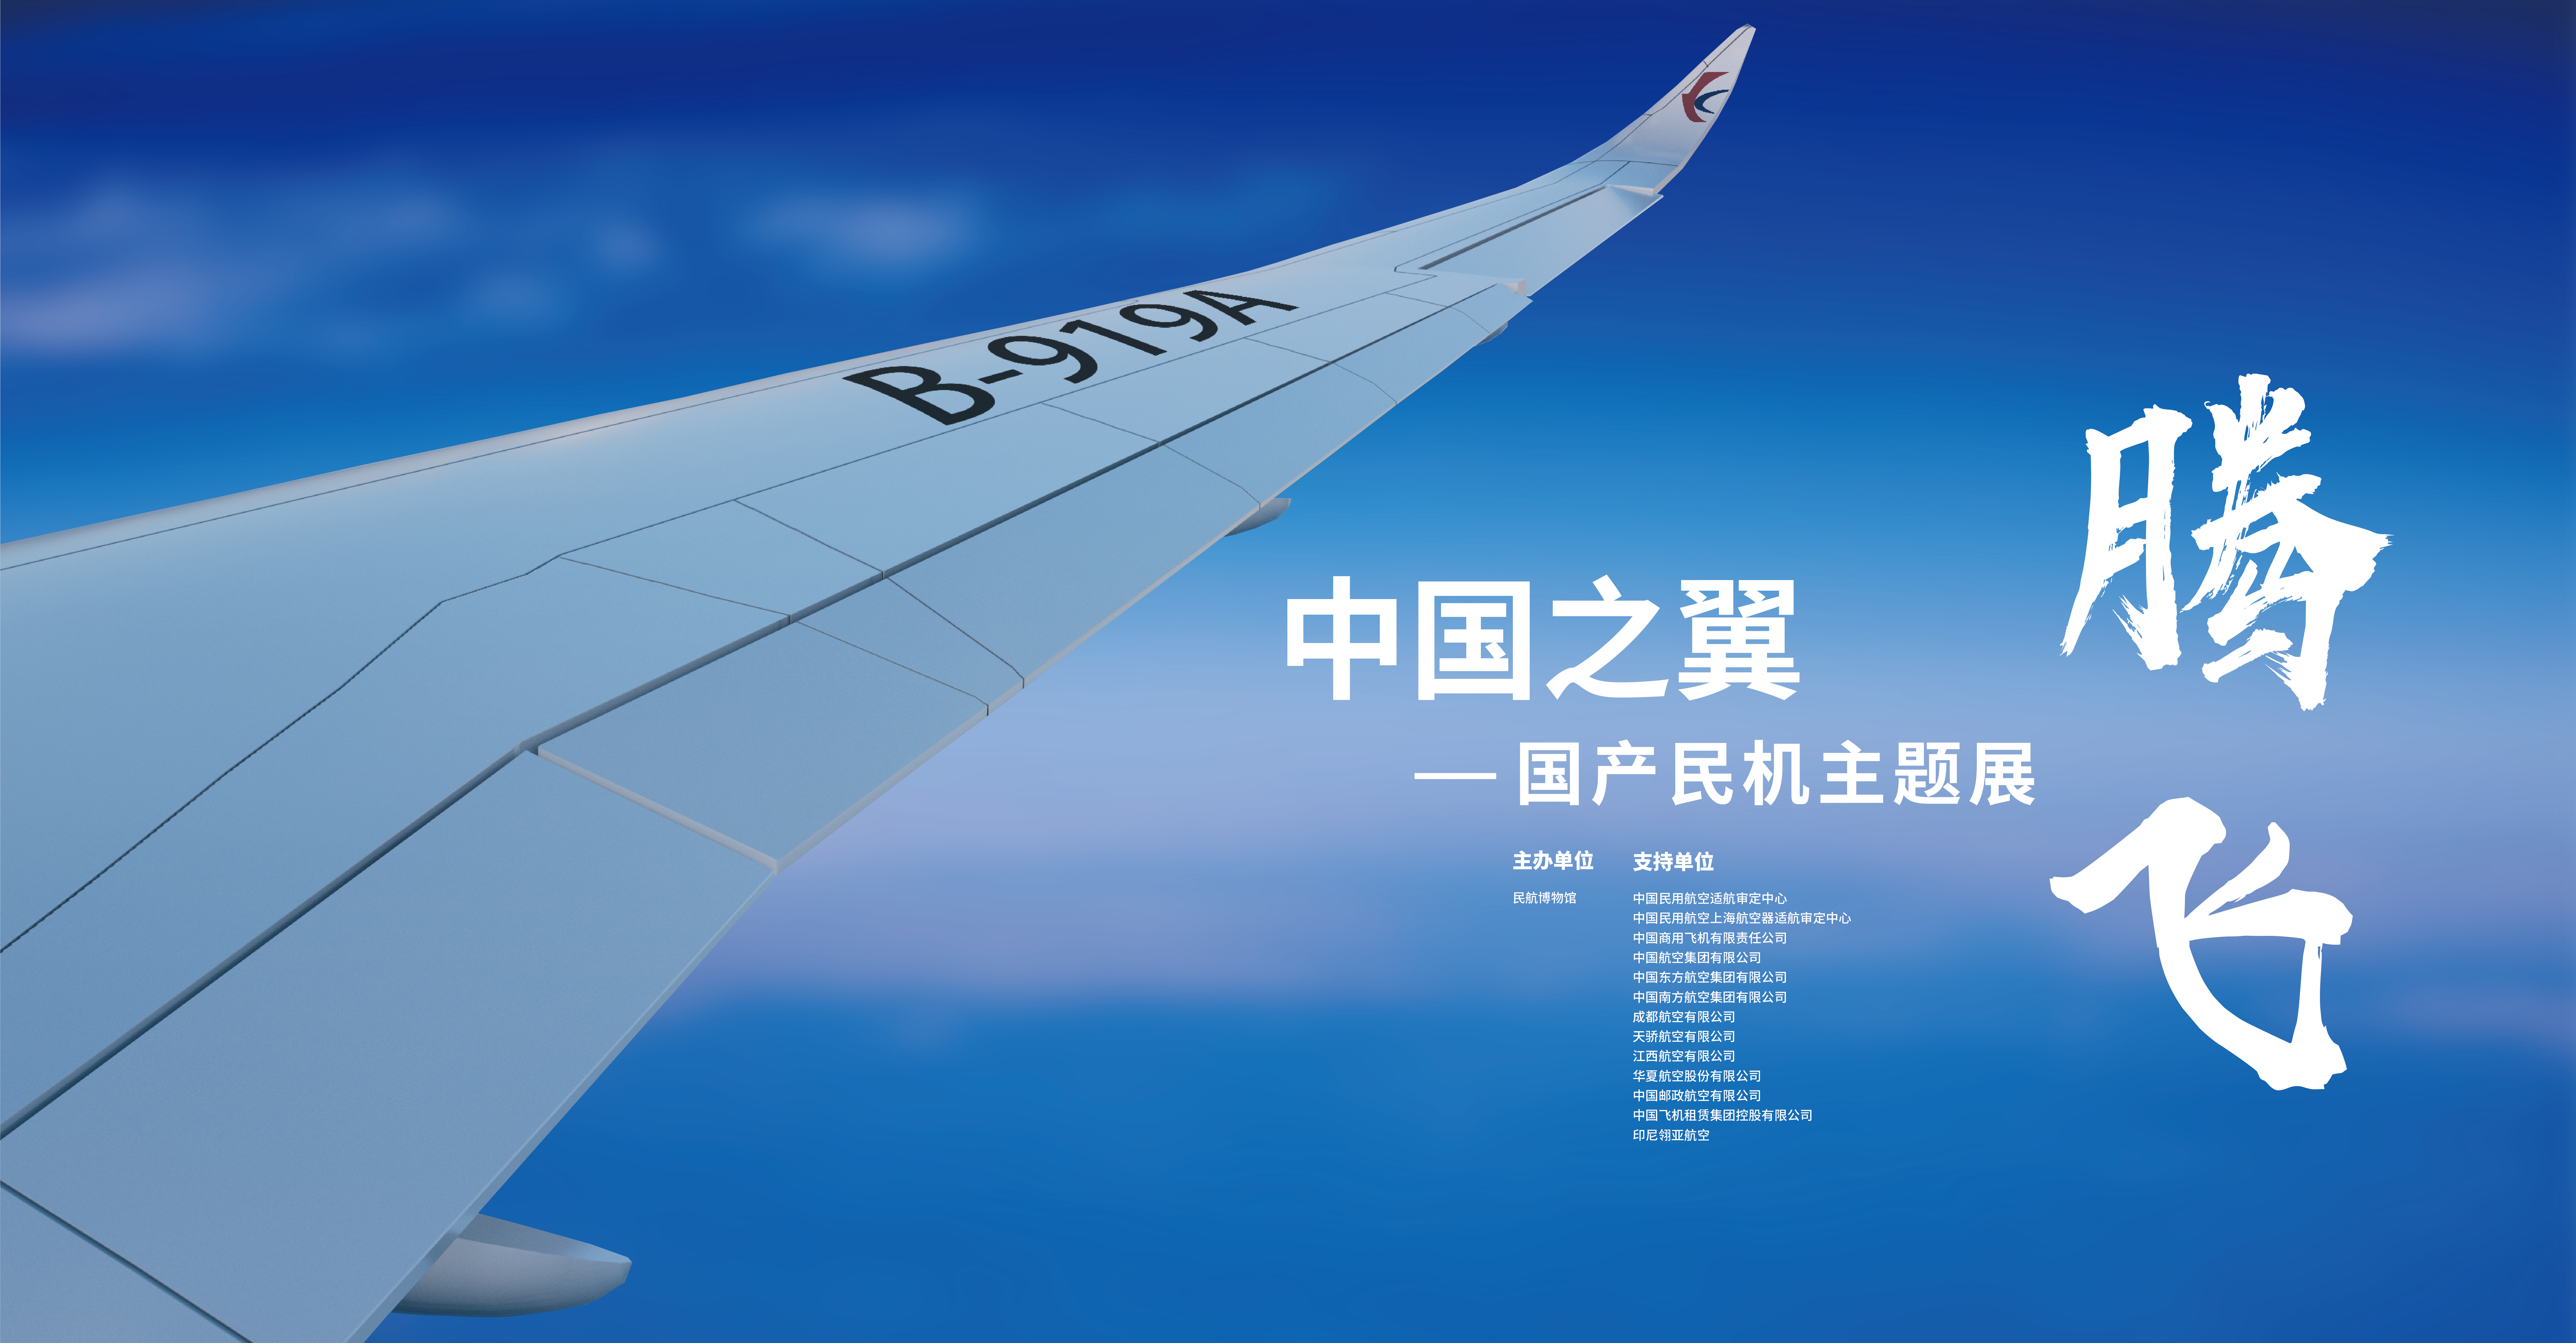 腾飞，中国之翼——国产民机主题展封面.jpg